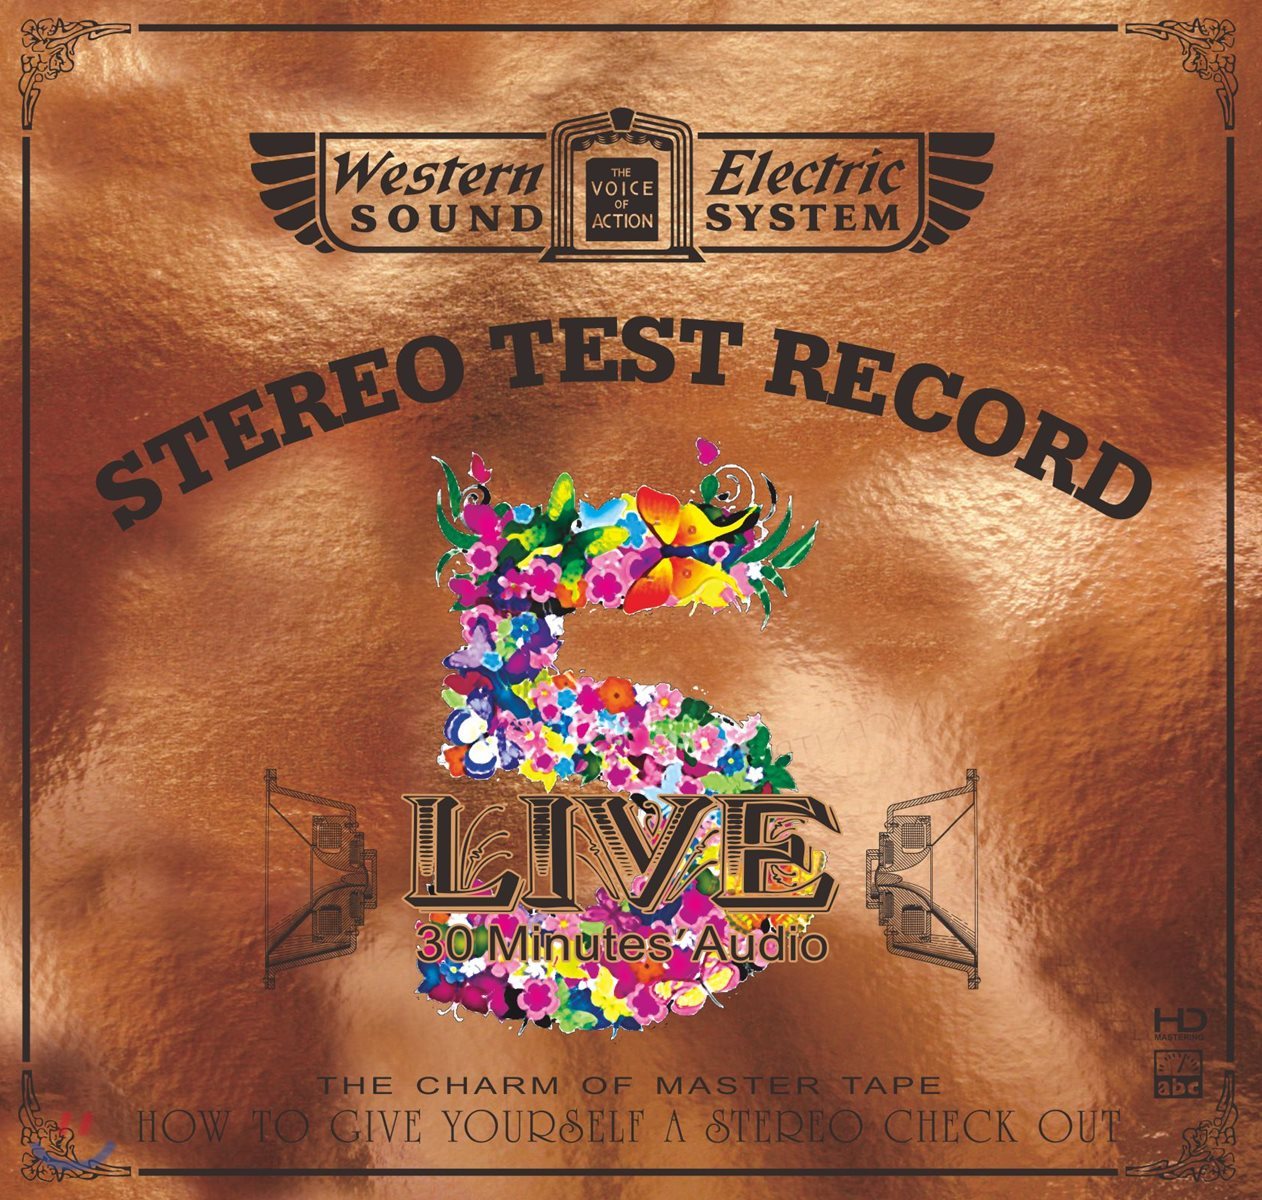 재즈, 클래식, 록 고음질 음악 모음집 (Western Electric Sound : Live 5 - 30 Minutes’ Audio Test CD)